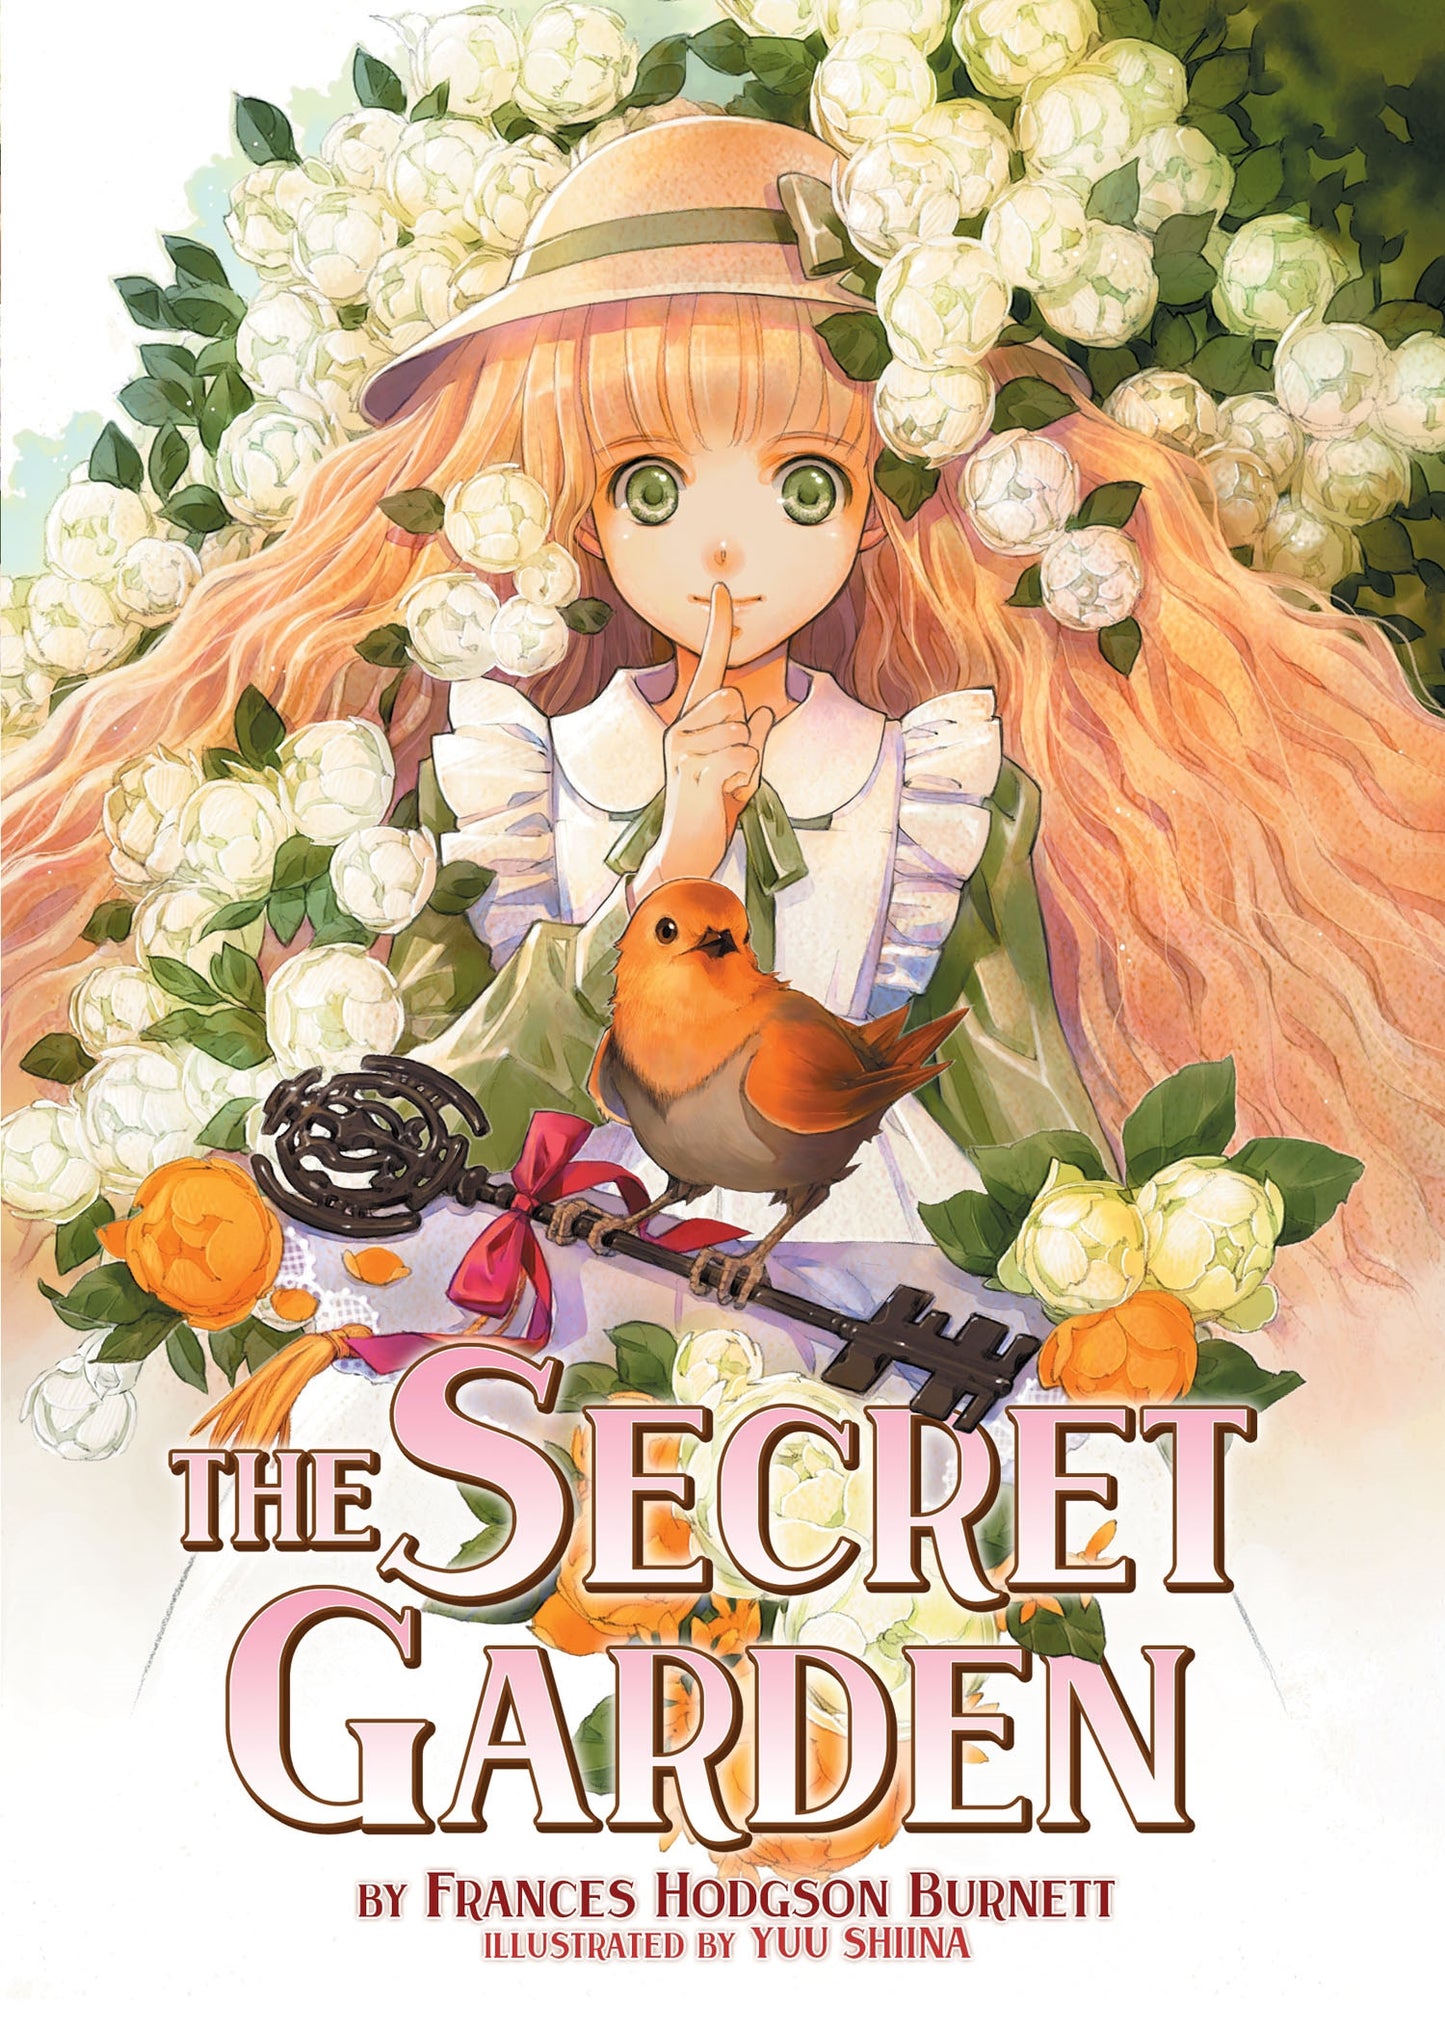 The Secret Garden (Illustrated Novel) - Manga Warehouse